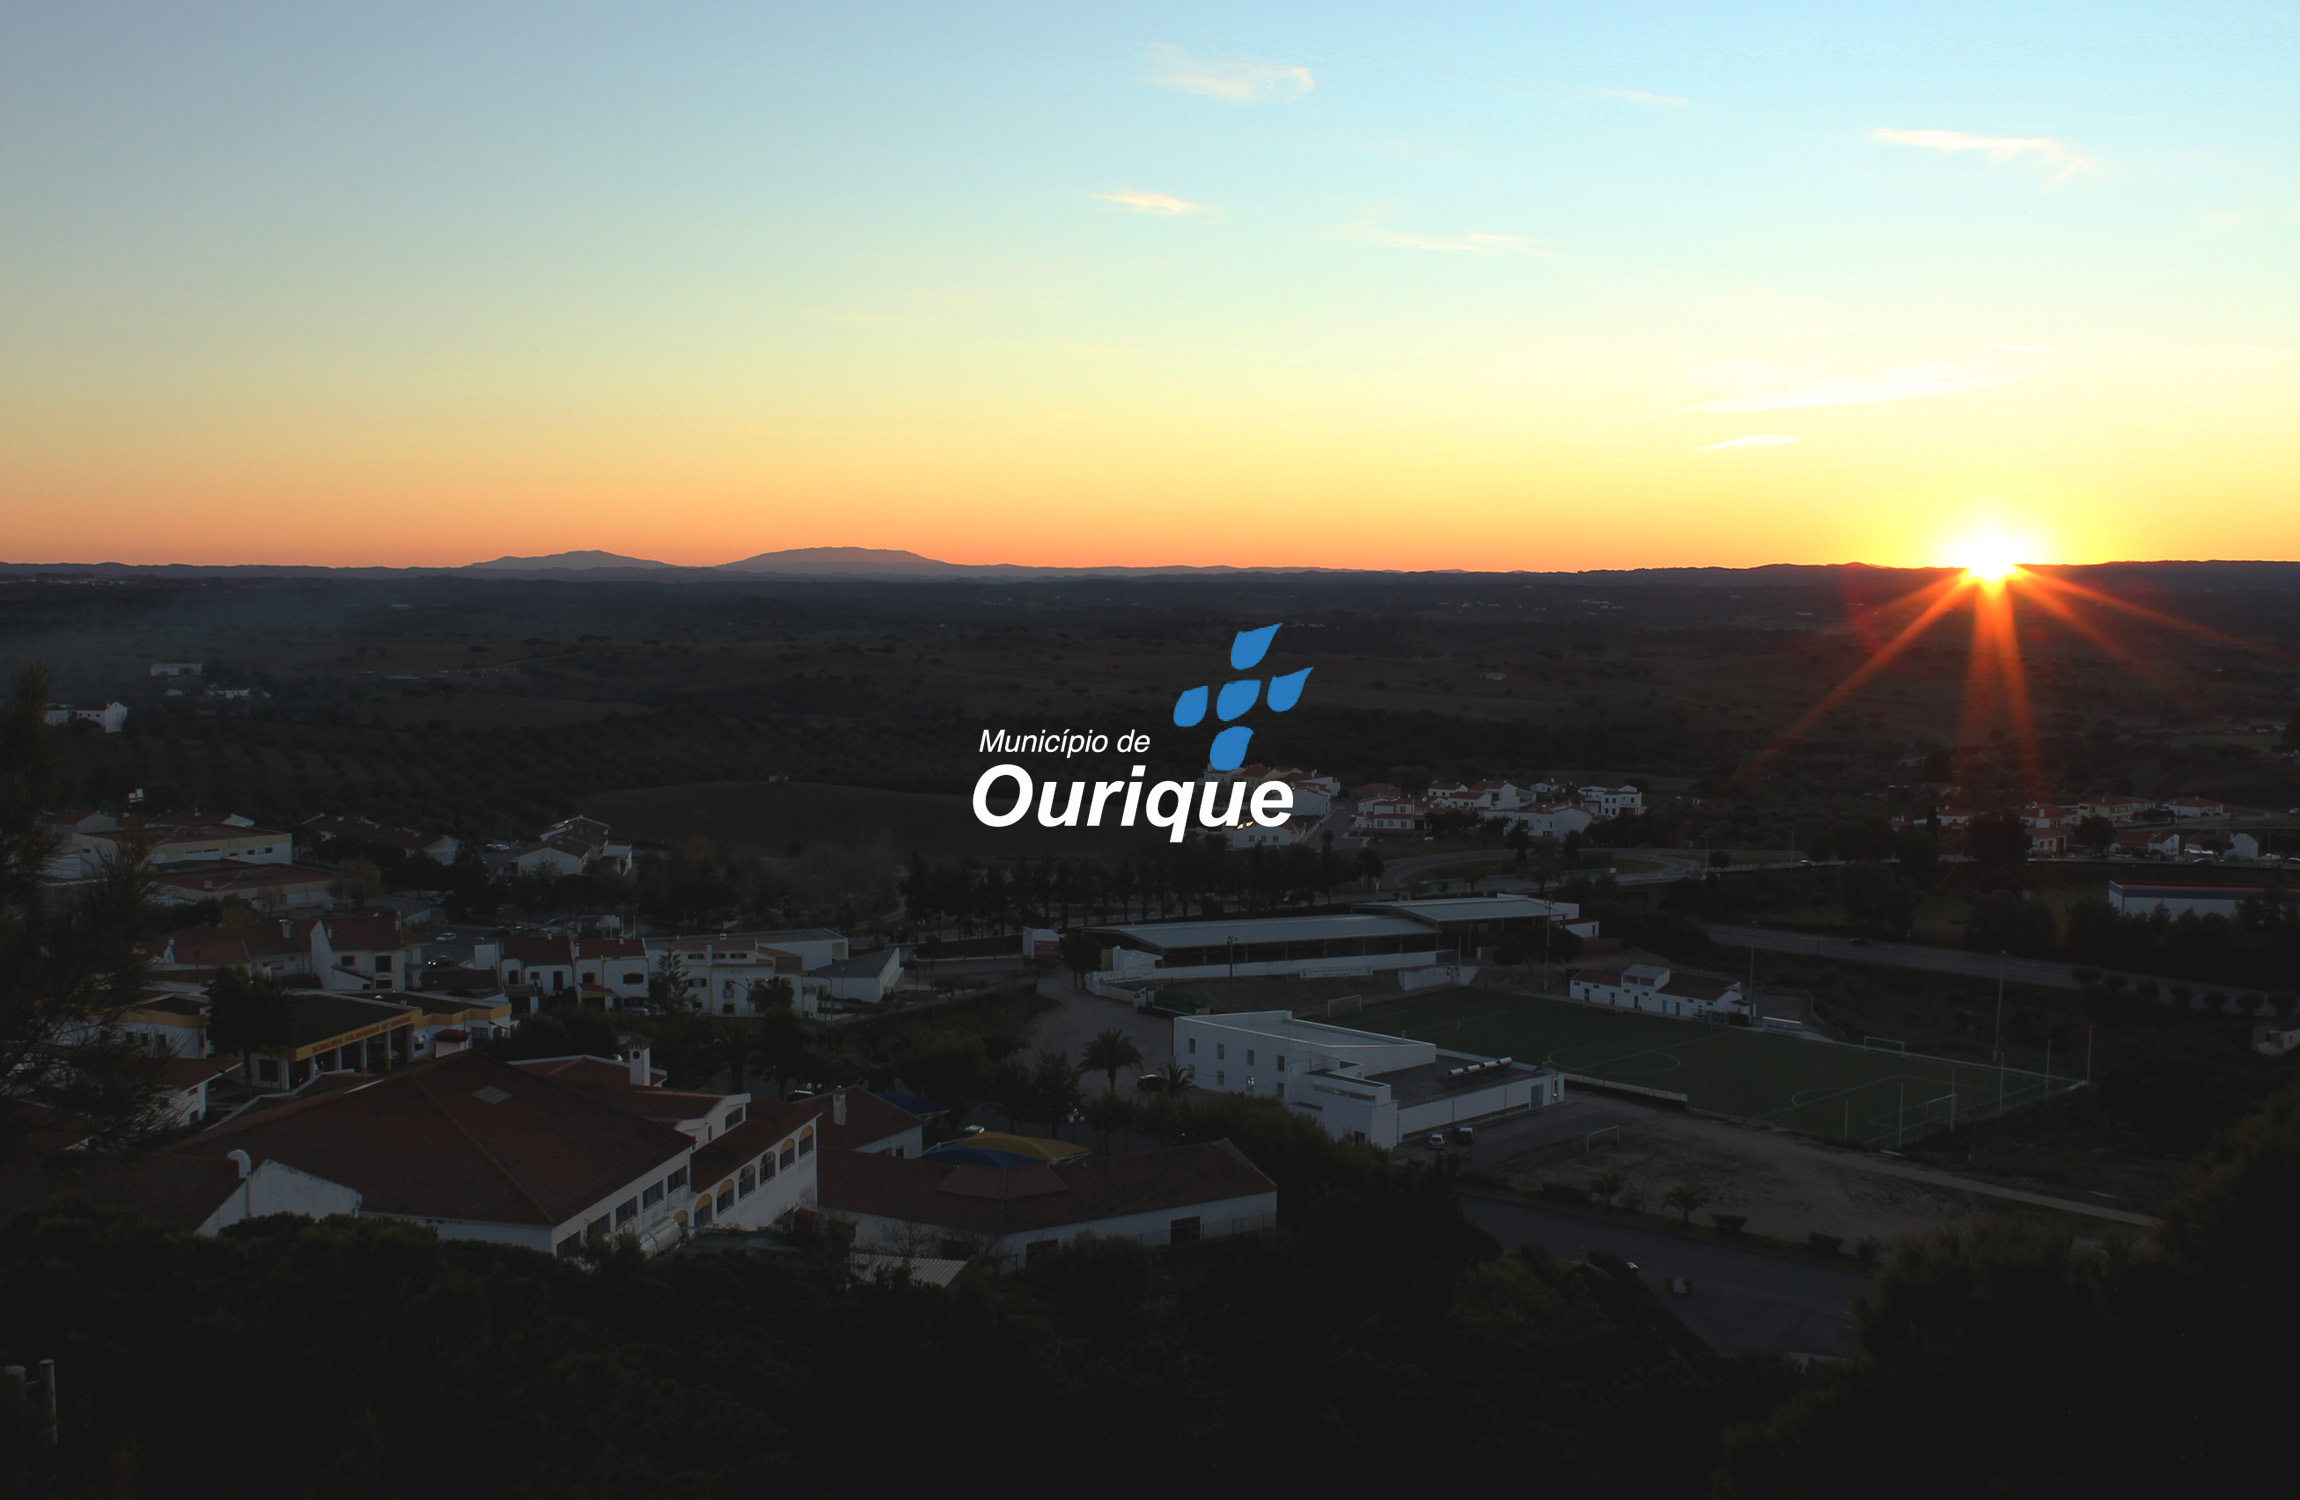 CM Ourique | Tourism & Hospitality